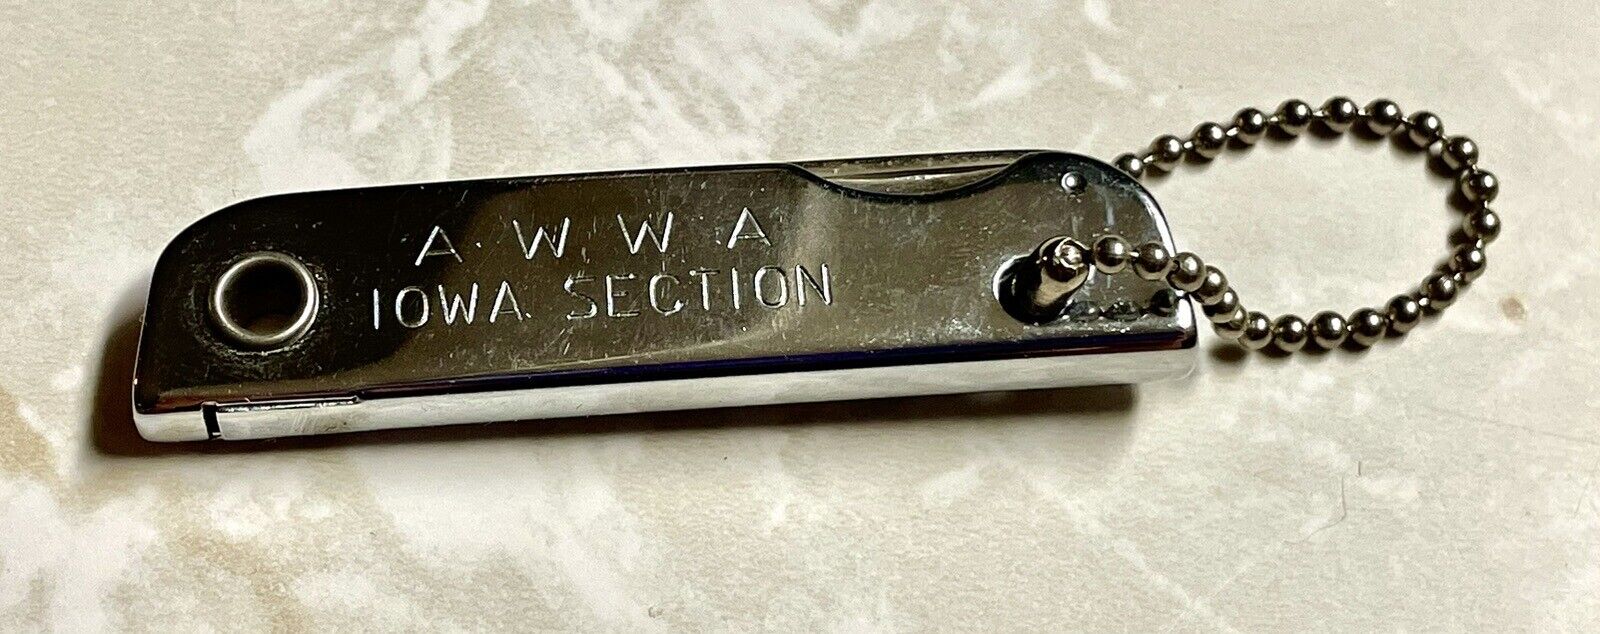 Vintage Metal AWWA Lowa Section Multi Tool Pocket Knife